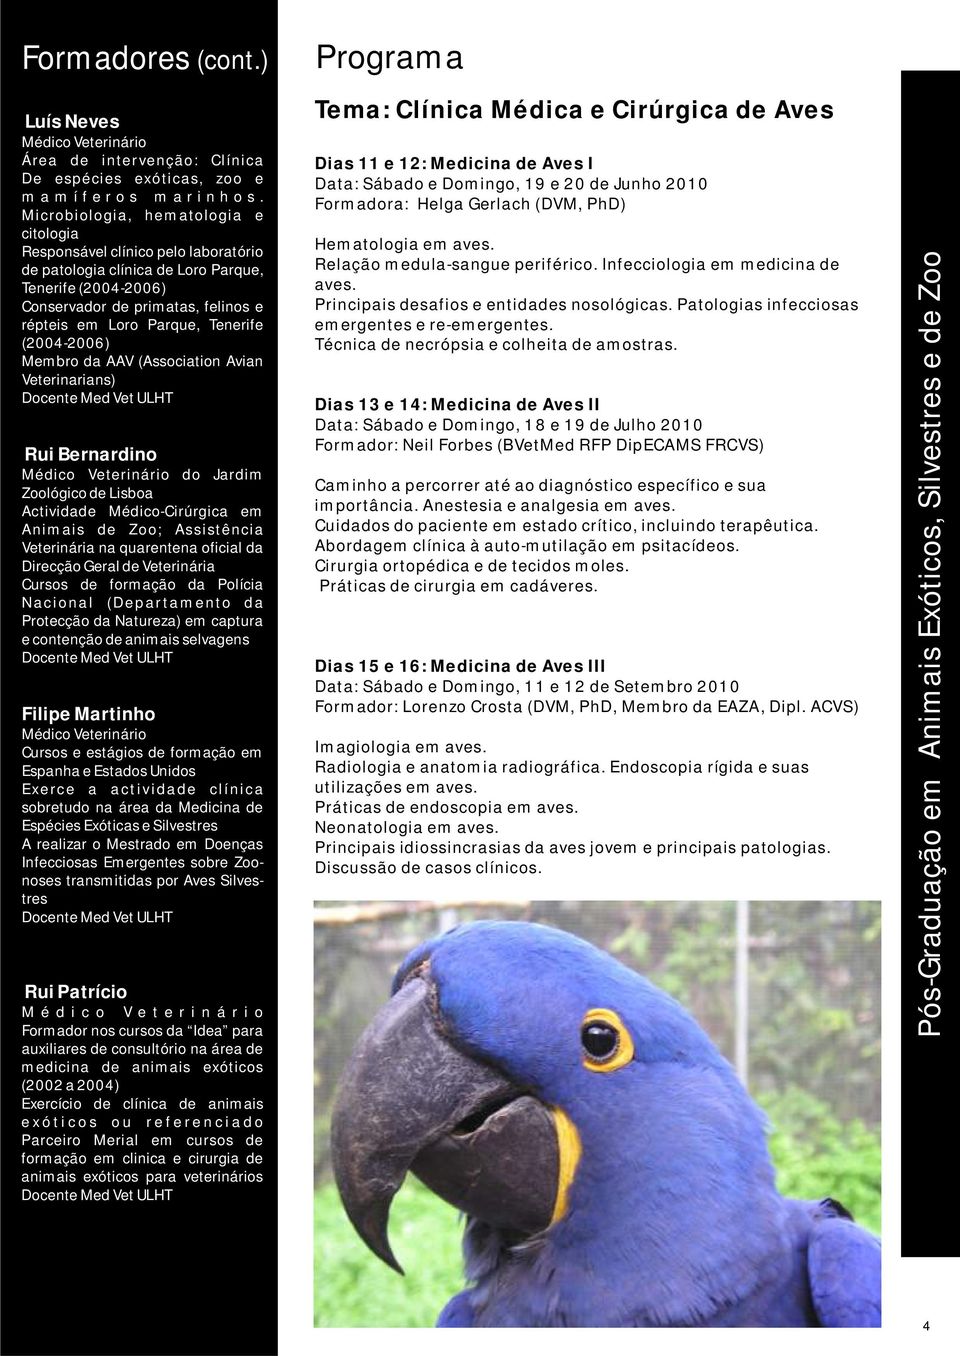 Tenerife (2004-2006) Membro da AAV (Association Avian Veterinarians) Rui Bernardino do Jardim Zoológico de Lisboa Actividade Médico-Cirúrgica em Animais de Zoo; Assistência Veterinária na quarentena